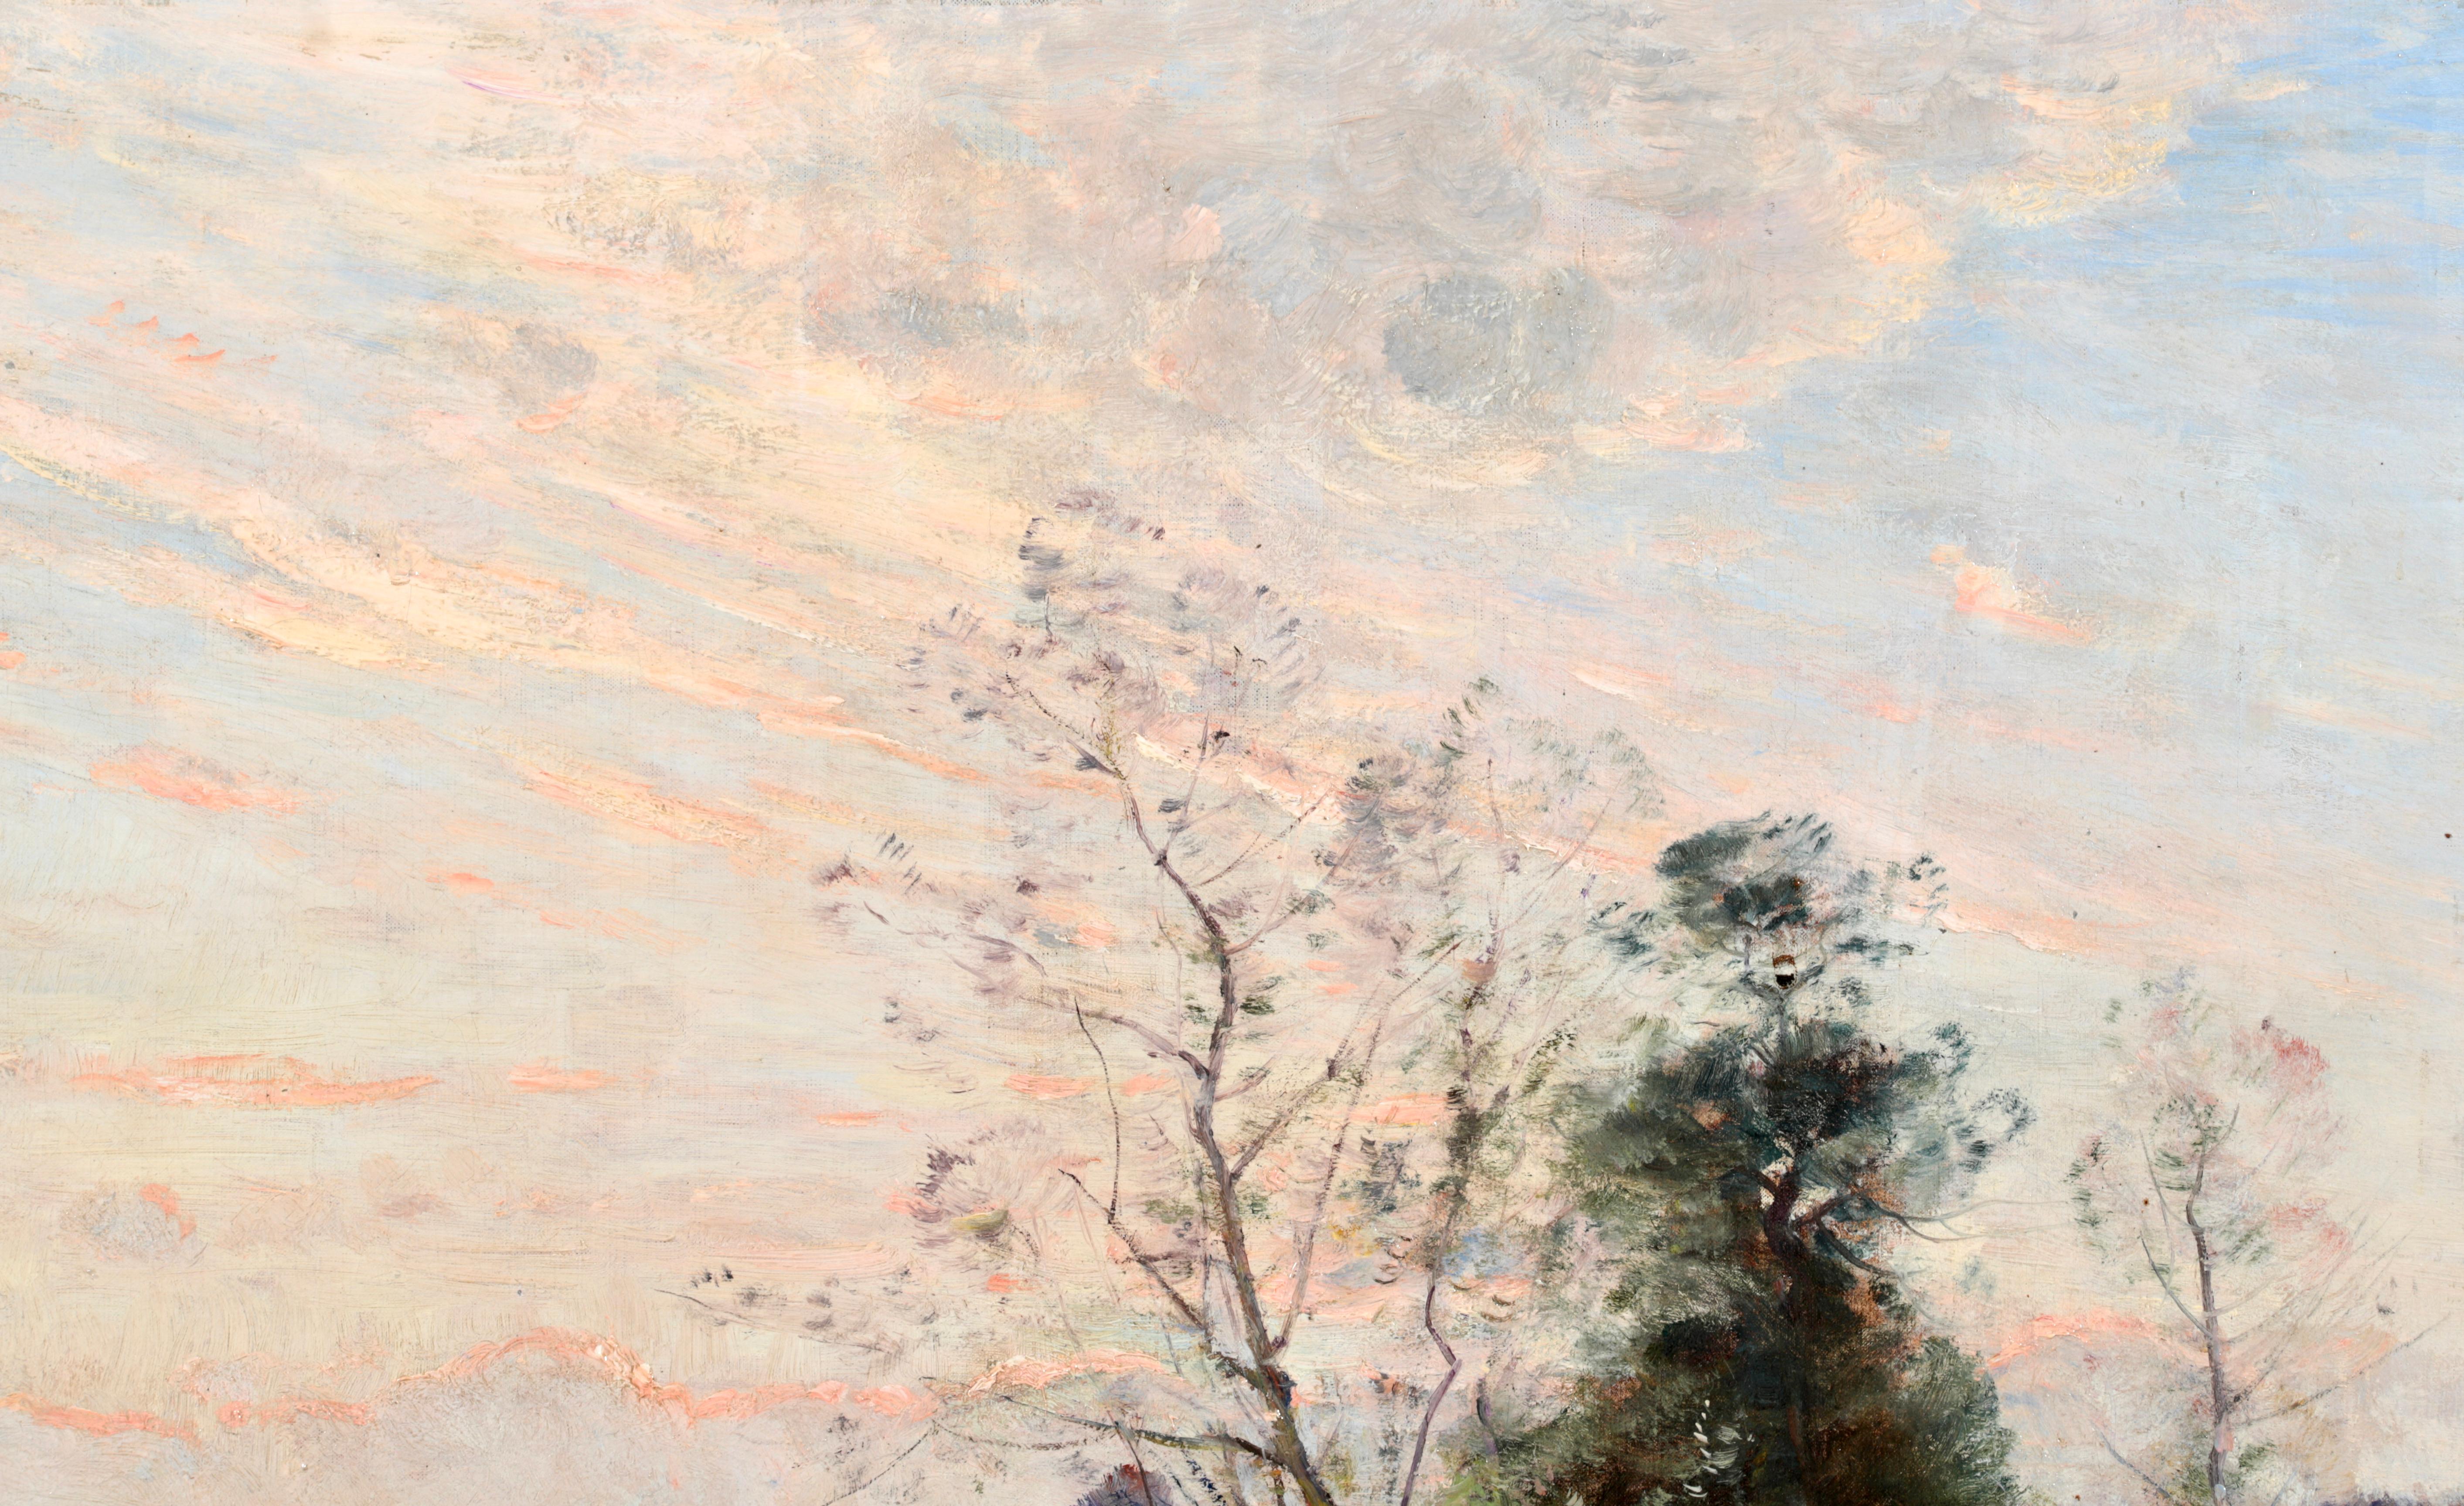 Signiert und datiert Flusslandschaft Öl auf Leinwand von Französisch impressionistischen Maler Louis Aime Japy. Das Werk stellt zwei Fischer in einem kleinen Kahn auf einem Fluss bei Sonnenuntergang dar. Die Wolken am Himmel leuchten rosa von der